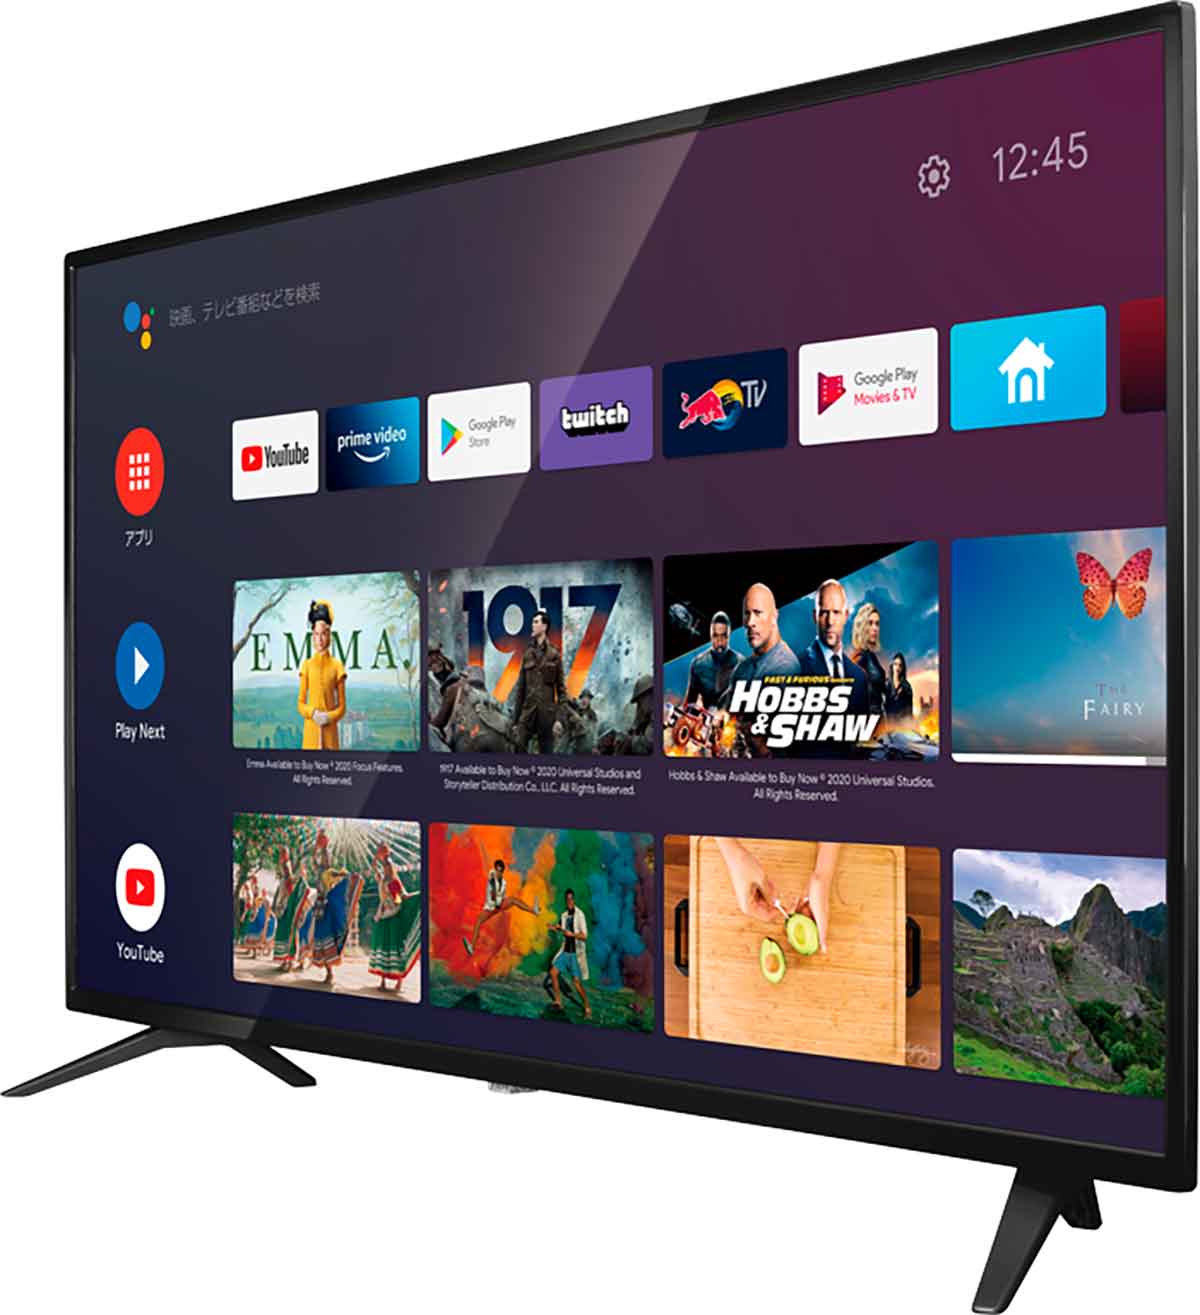 ドン・キホーテが2021年12月に発売した「AndroidTV 機能搭載チューナーレス スマートテレビ」